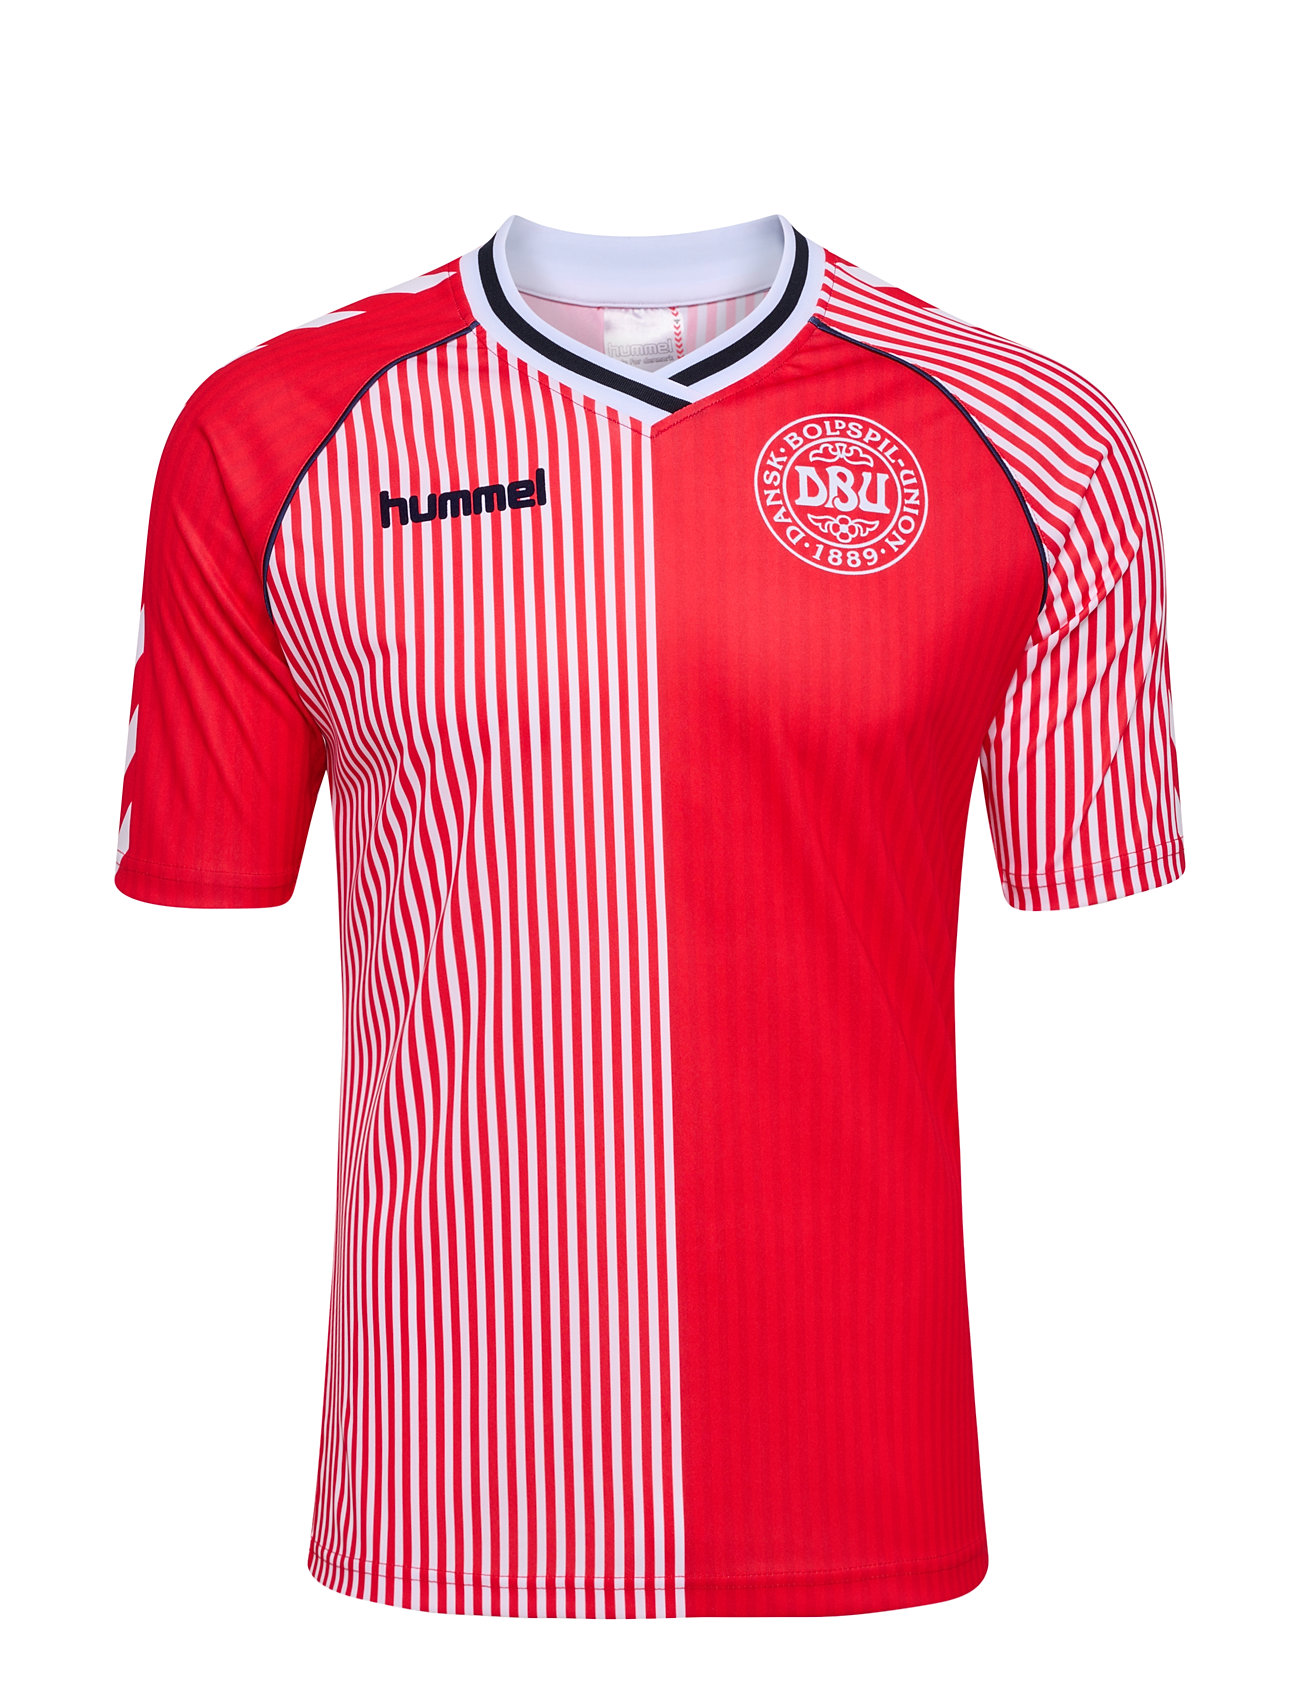 Dbu 86 Replica Jersey S/S Kids Sport T-shirts Football Shirts Red Hummel